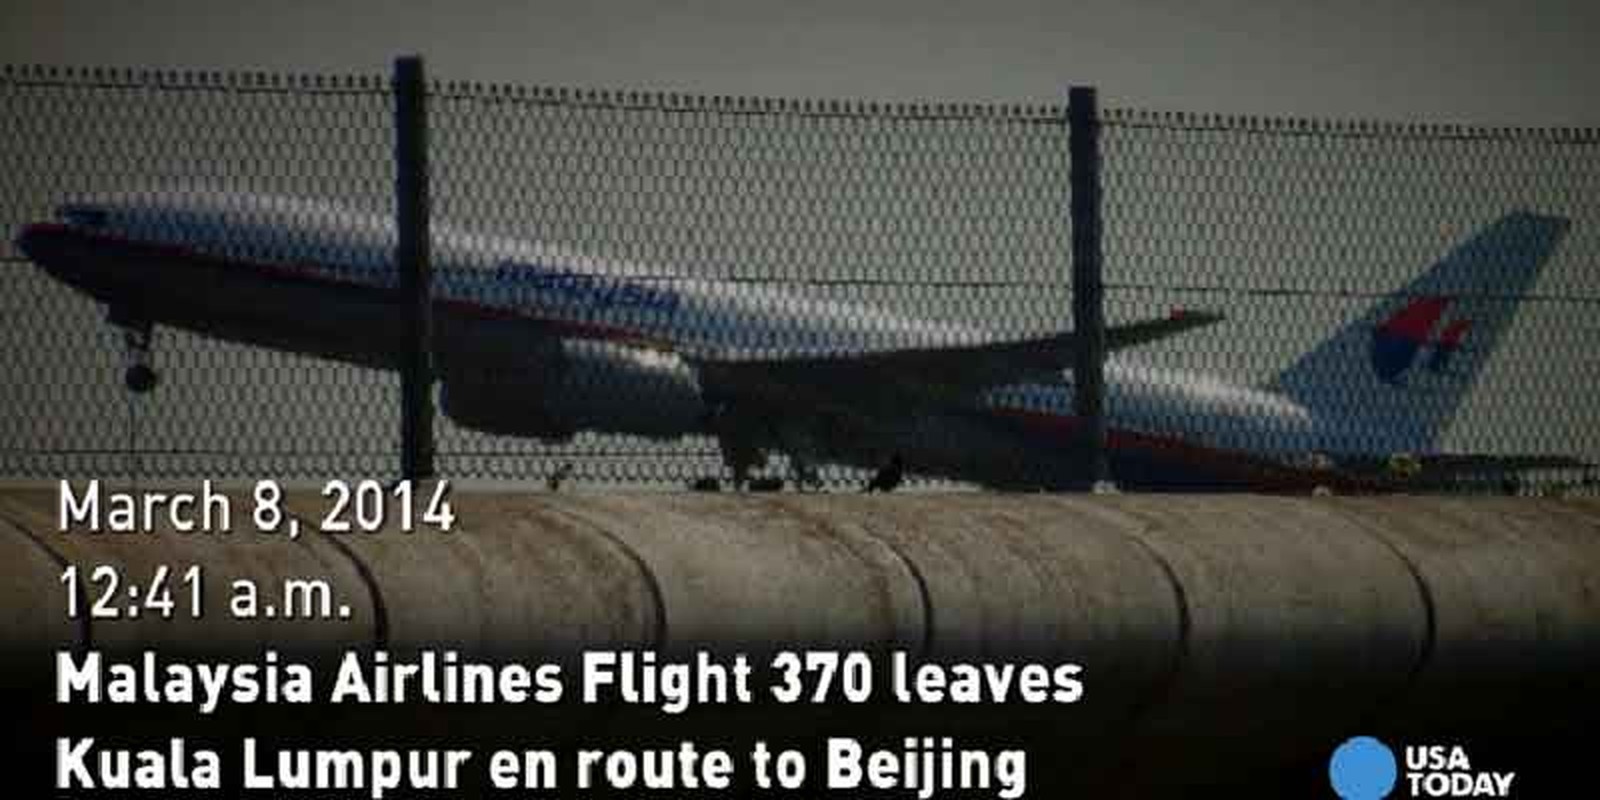 Nhin lai mot nam khac khoai tim kiem MH370-Hinh-2